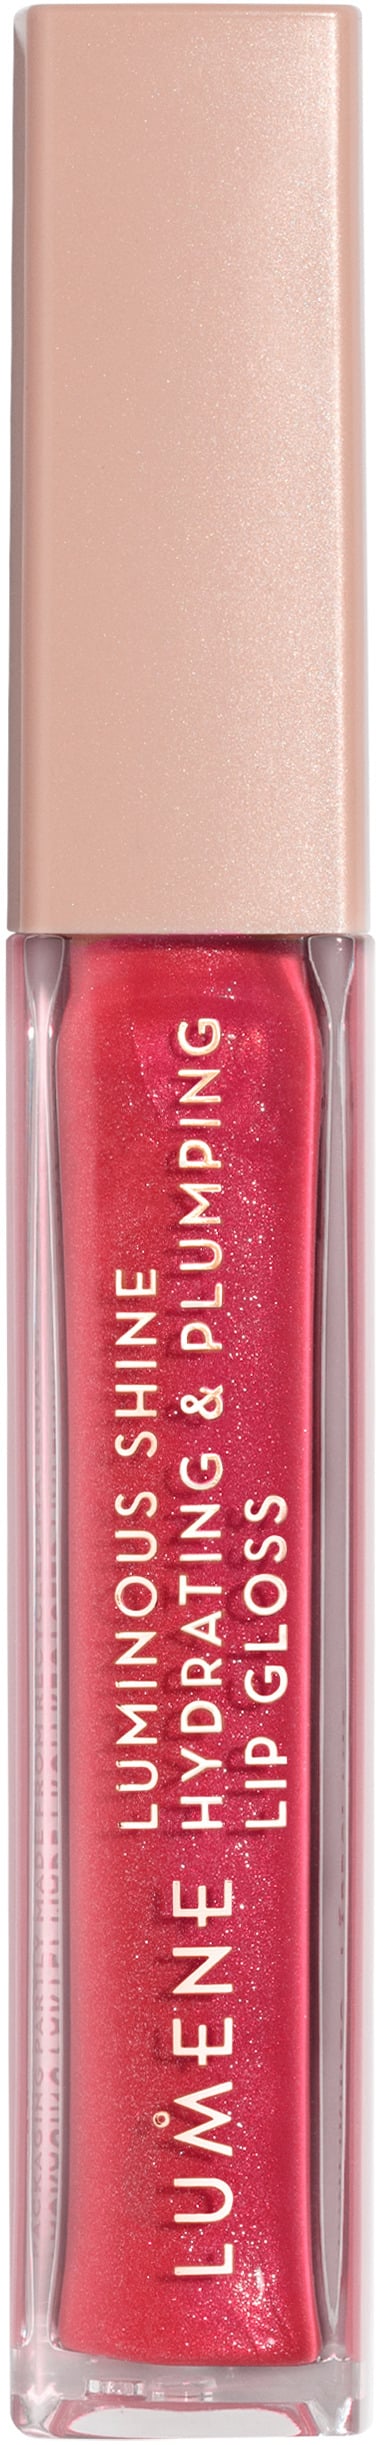 Lumene Luminous Shine Hydrating & Plumping Lip Gloss 5 Bright Rose 5 ml